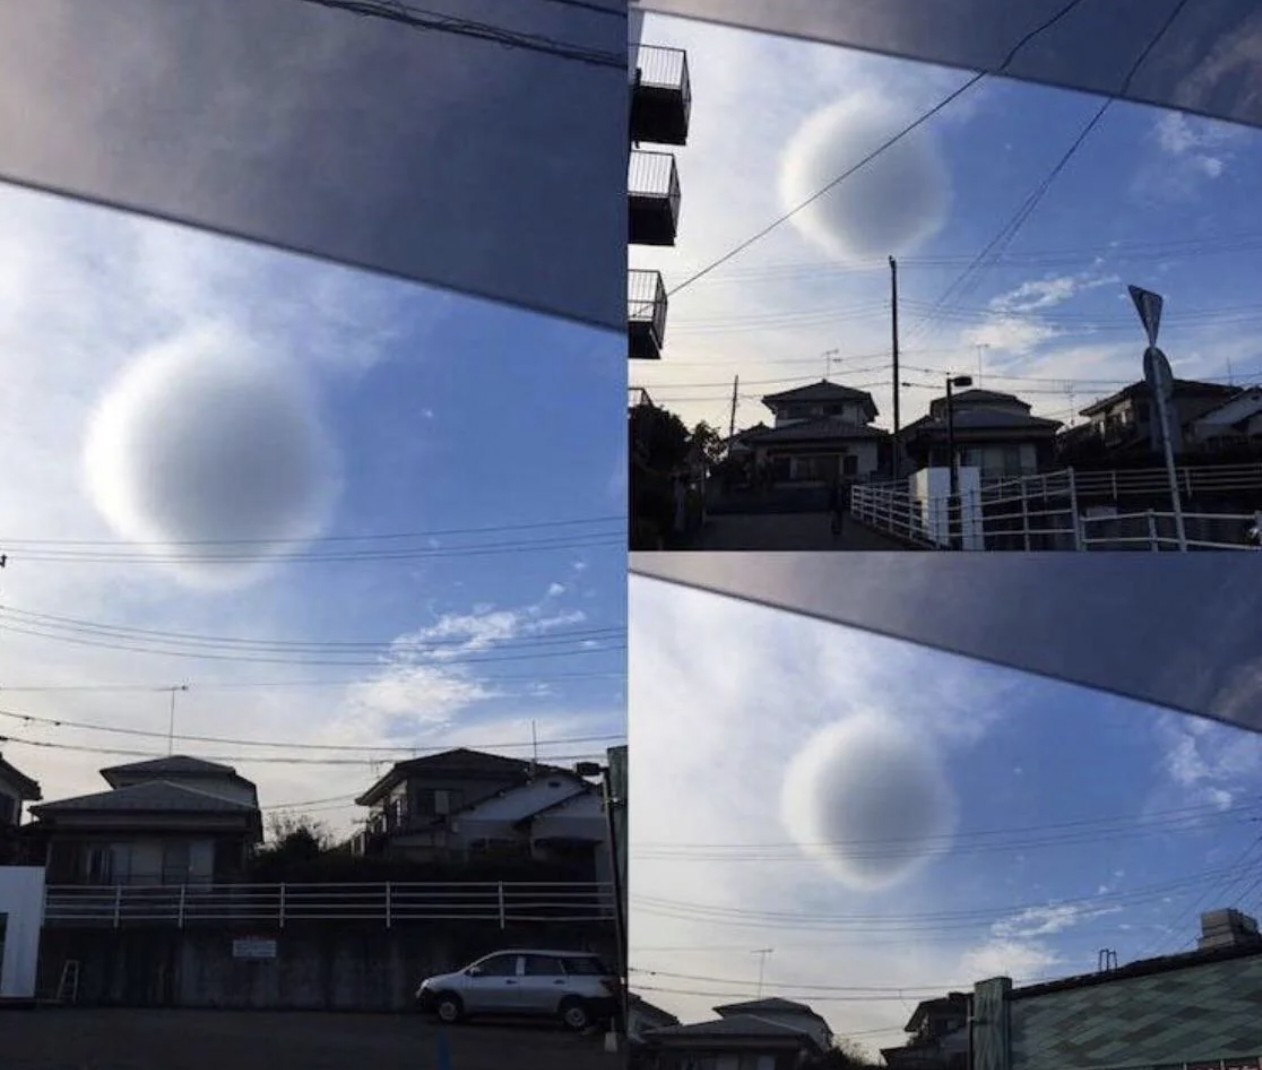 spherical cloud